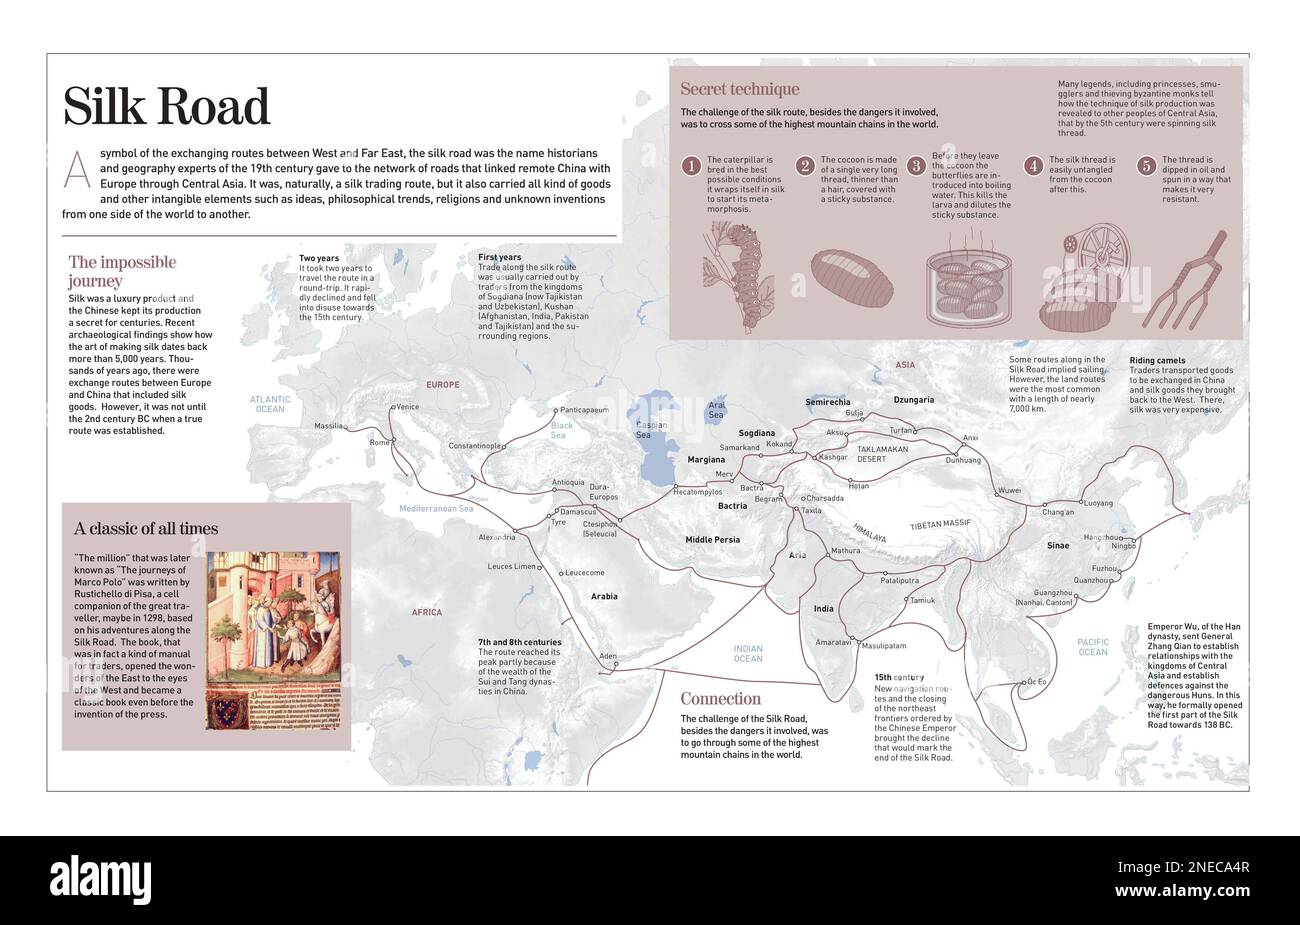 Infografica sulla via della seta, che collegava l'Estremo-Oriente con l'Europa tra i secoli 2nd e 15th. . [Adobe InDesign (.indd); 4960x8503]. Foto Stock